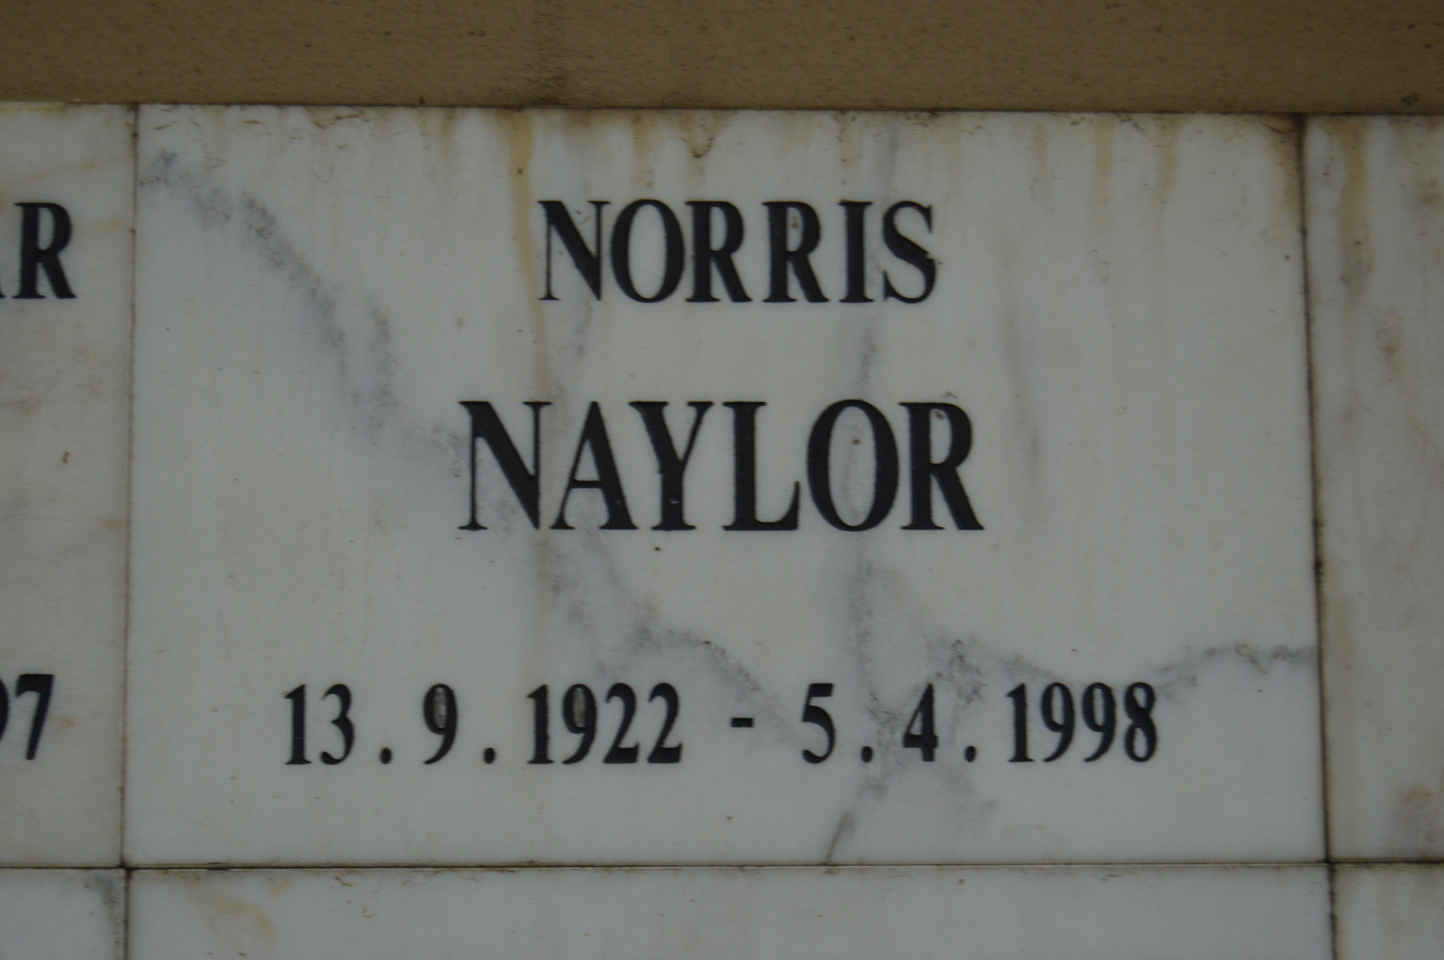 NAYLOR Norris 1922-1998